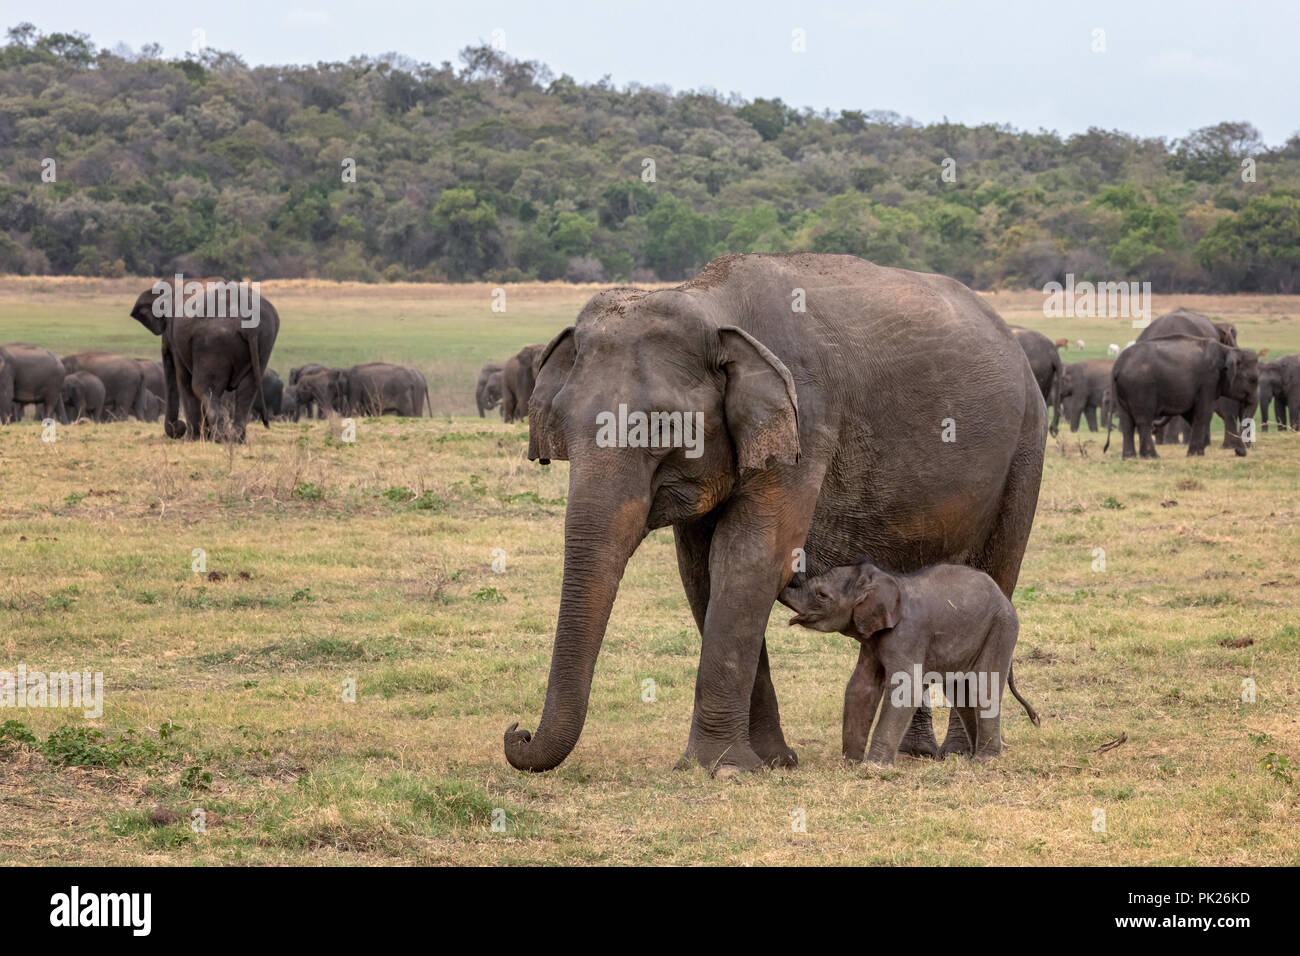 Sri Lankan elephants (Elephas maximus maximus) in Minneriya National Park, Sri Lanka Stock Photo